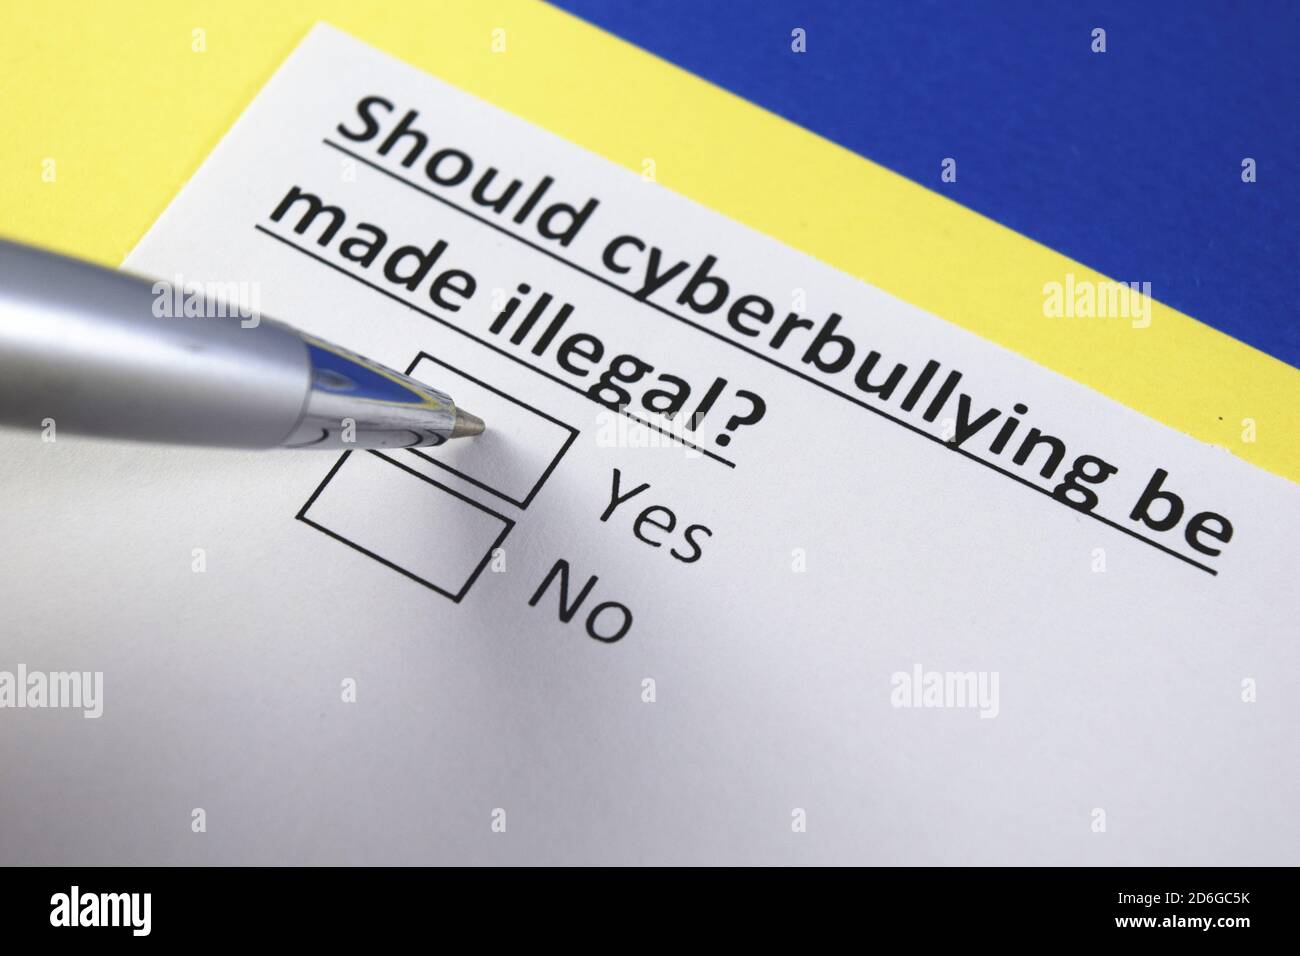 Sollte Cybermobbing illegal gemacht werden? Ja oder Nein? Stockfoto